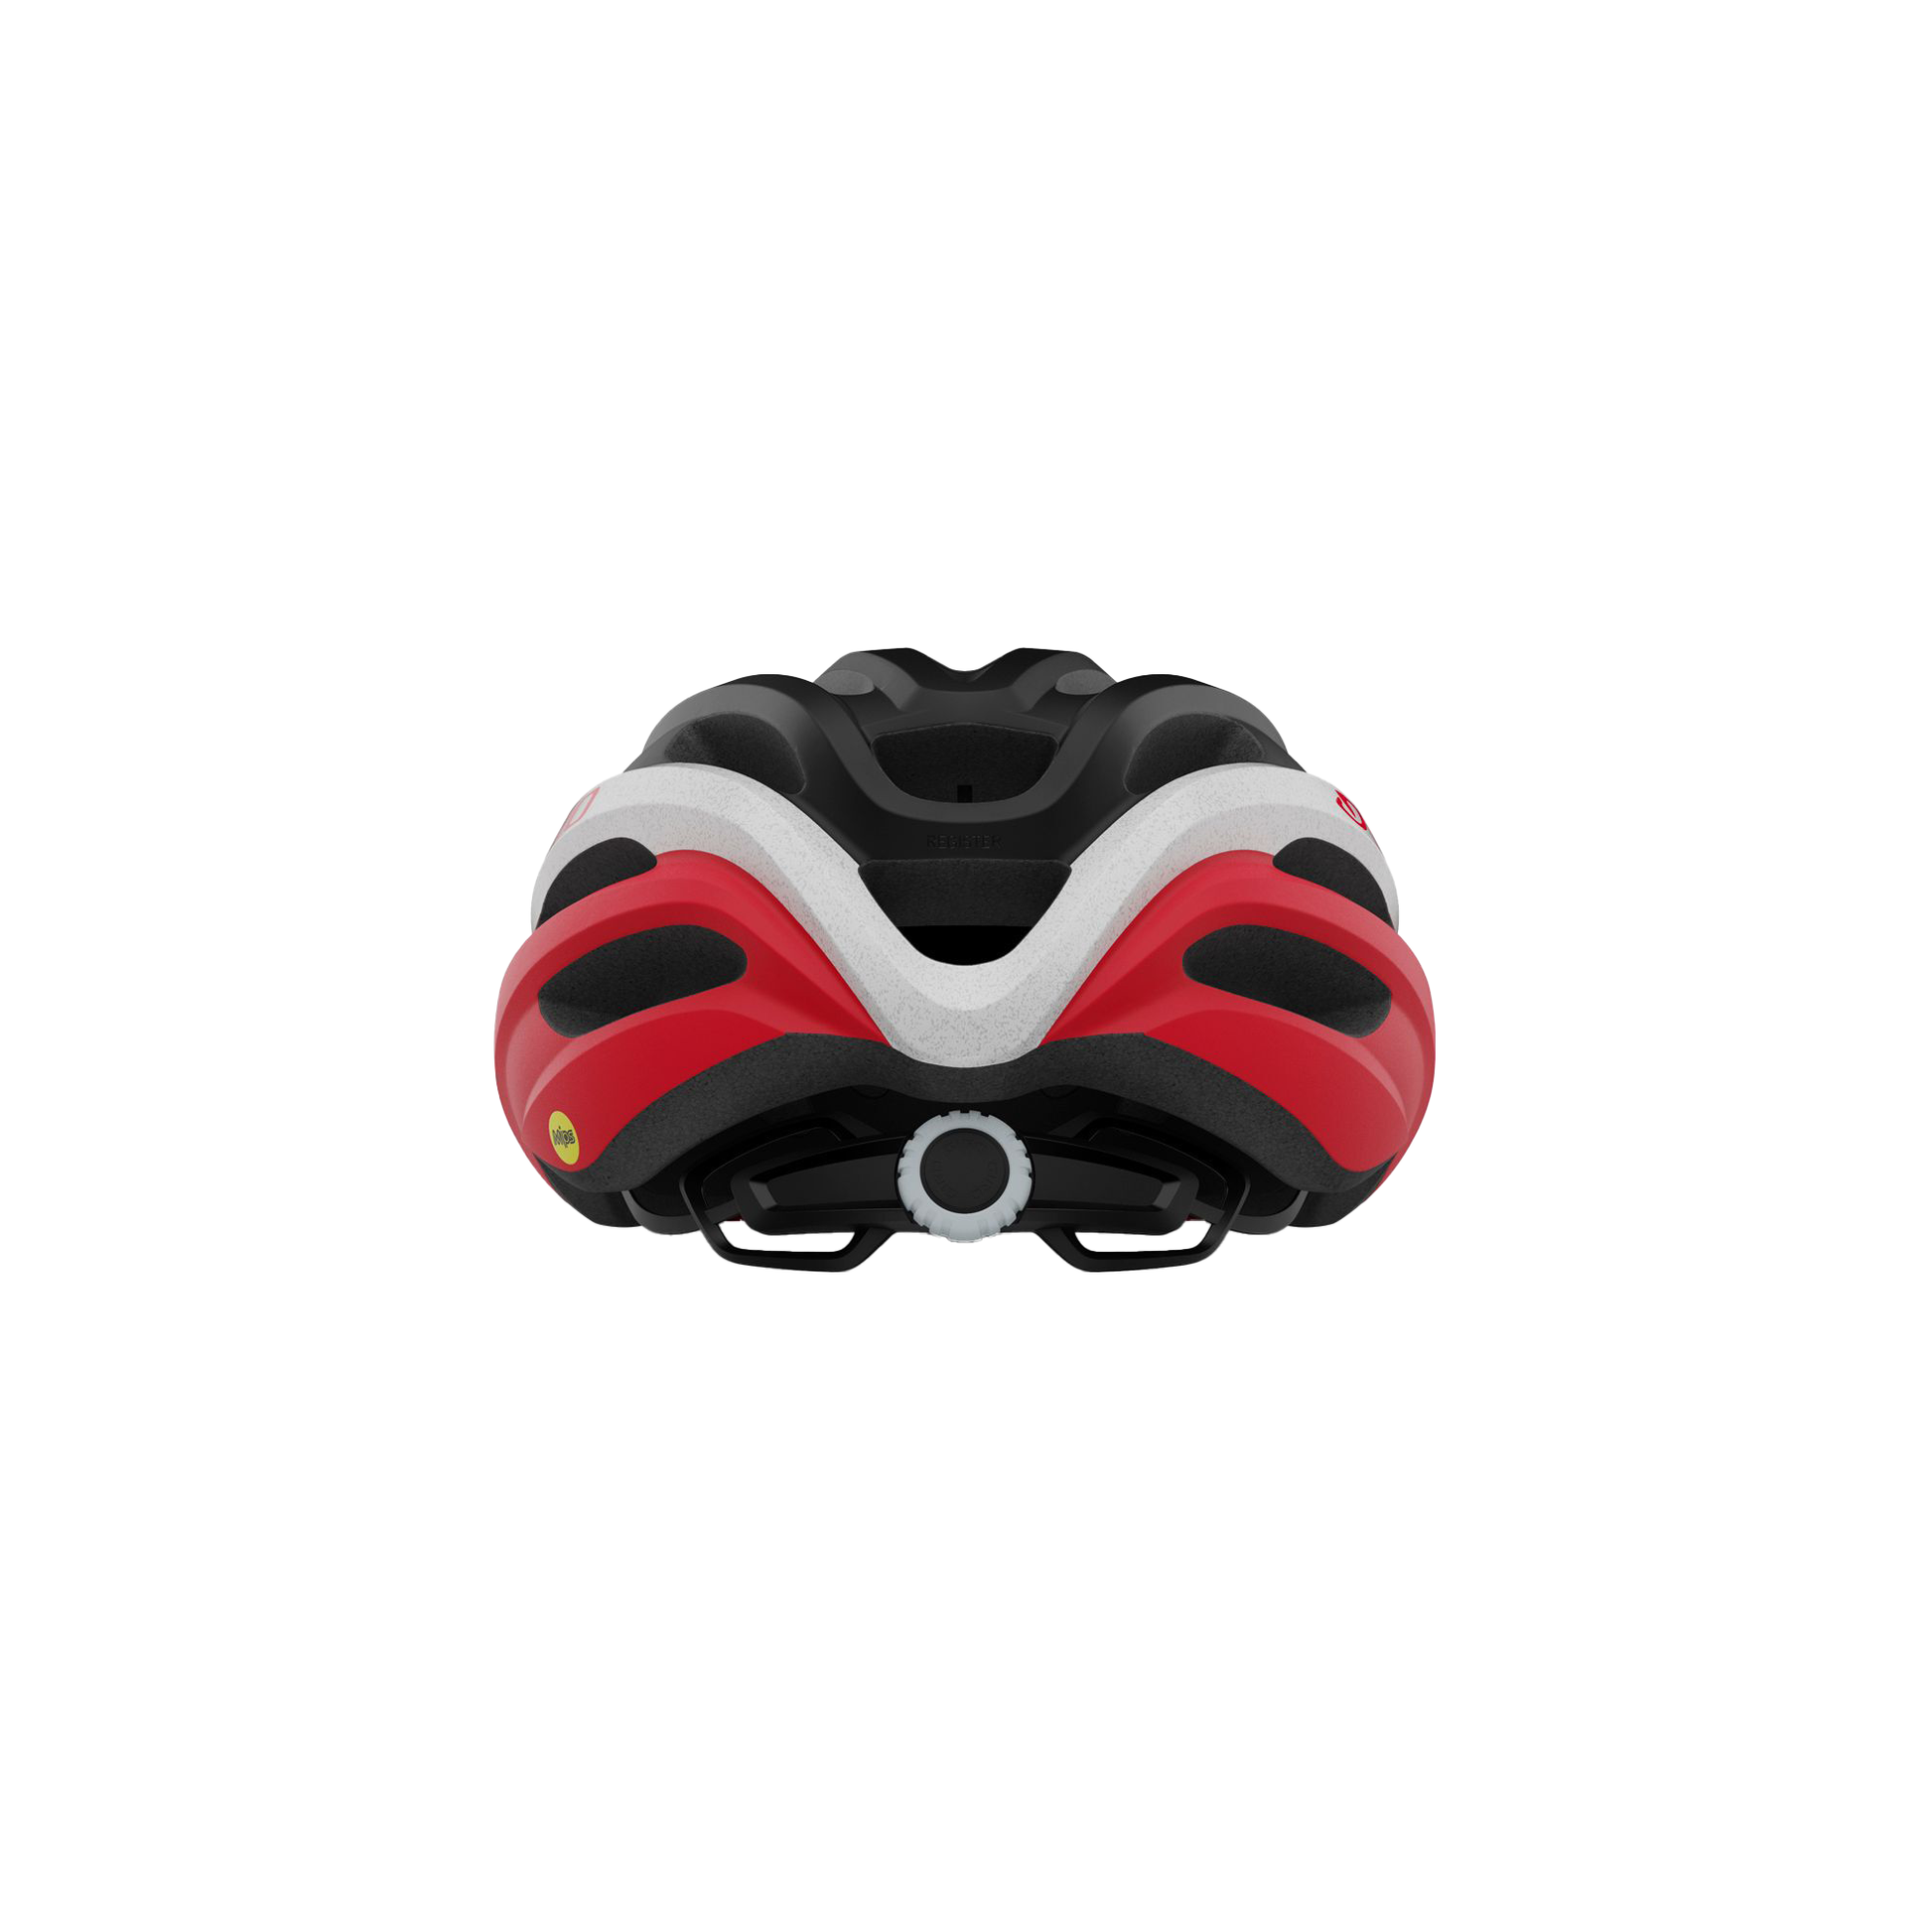 Giro Register MIPS Helmet Matte Black/Red UA Bike Helmets